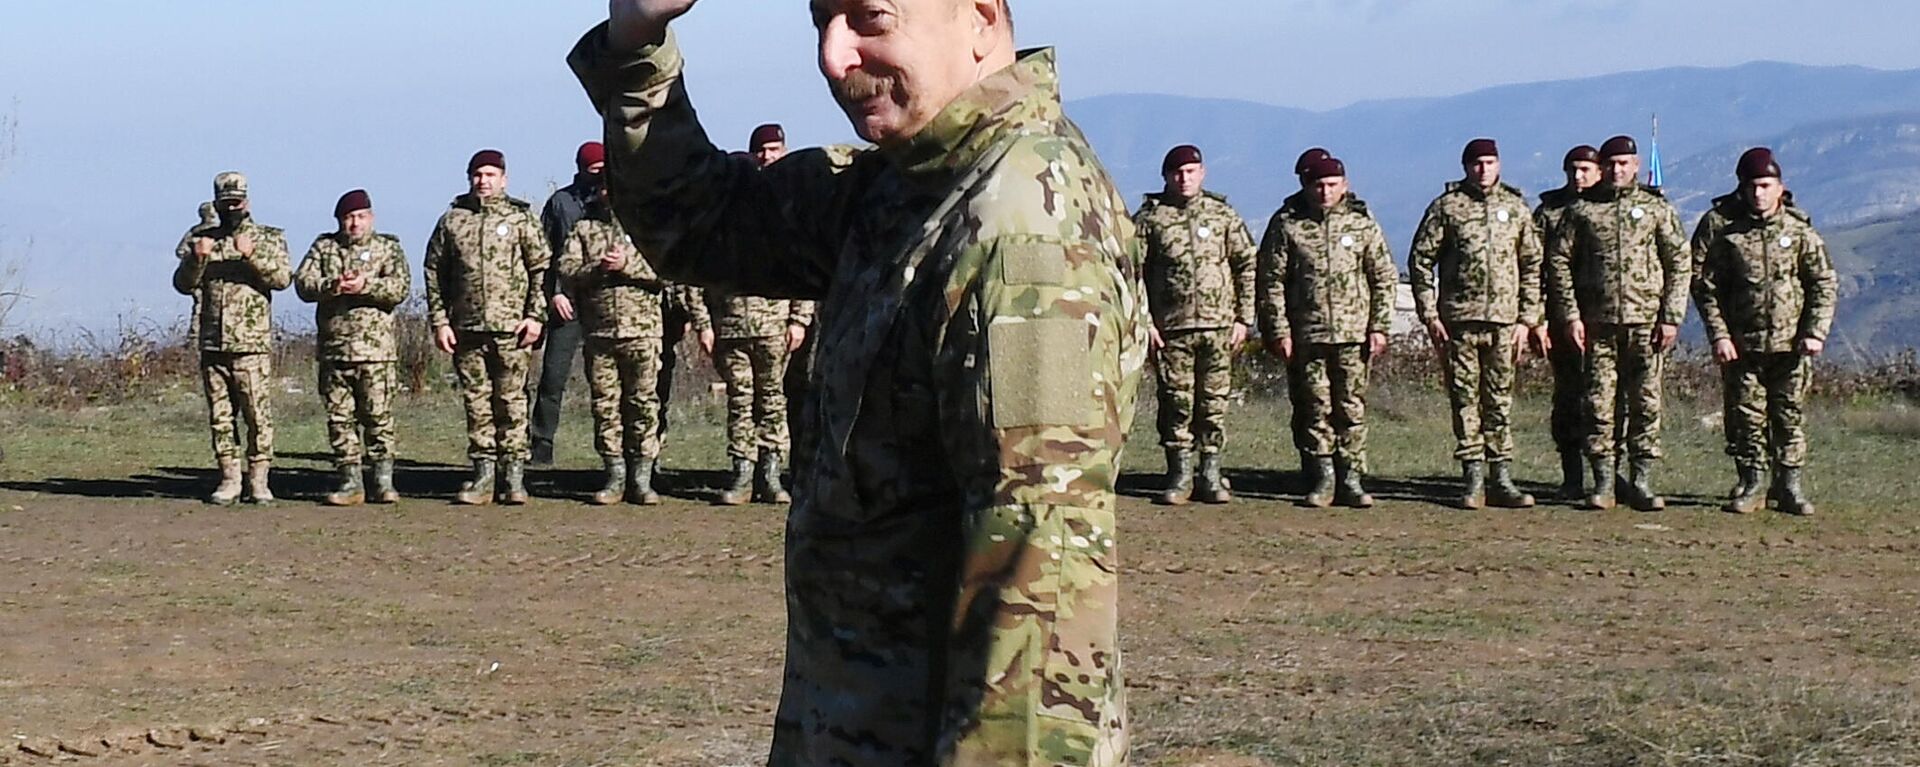 Президент АзербайджанаИльхам Алиев выступил перед военнослужащими в Шуше - Sputnik Азербайджан, 1920, 08.11.2021